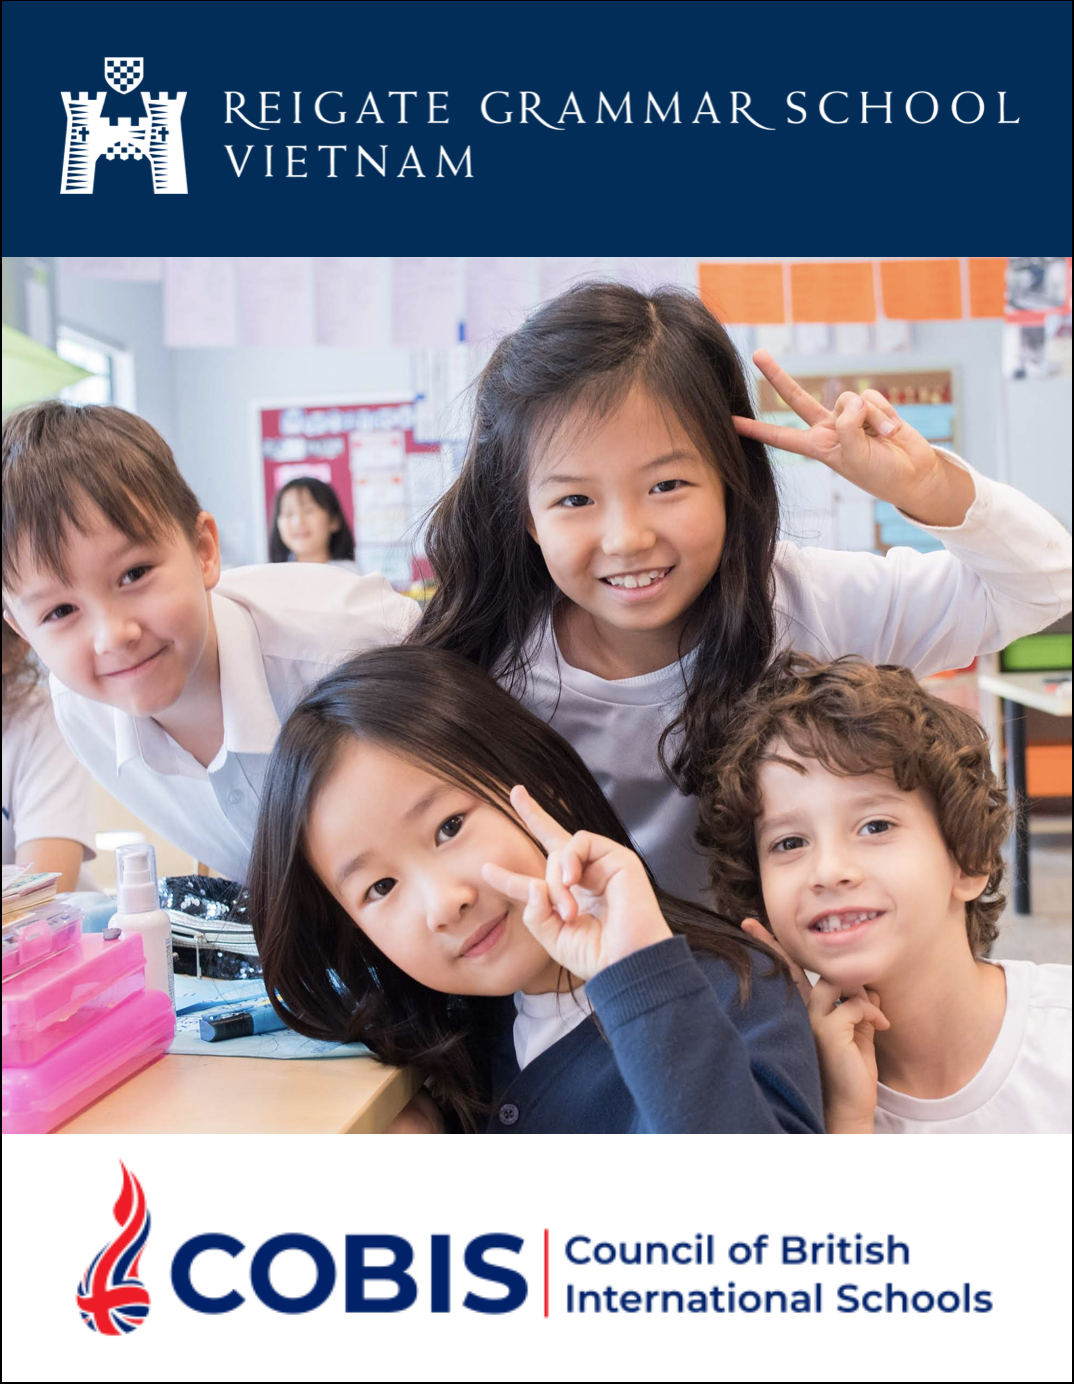 RGS Vietnam to become a COBIS school